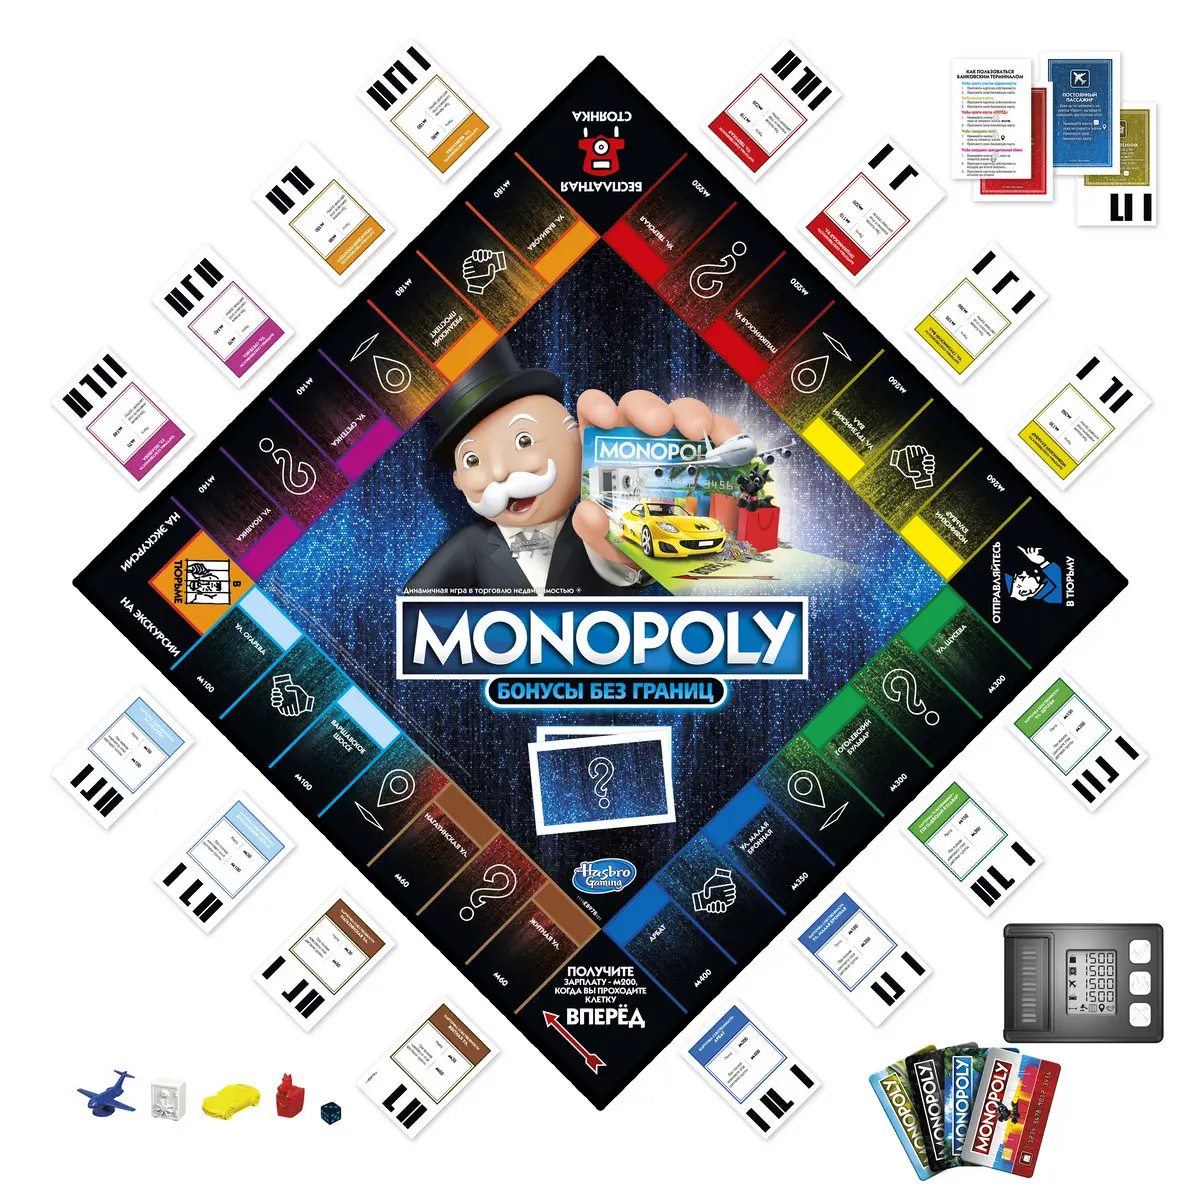 Игра настольная "Монополия. Бонусы без границ" - фото